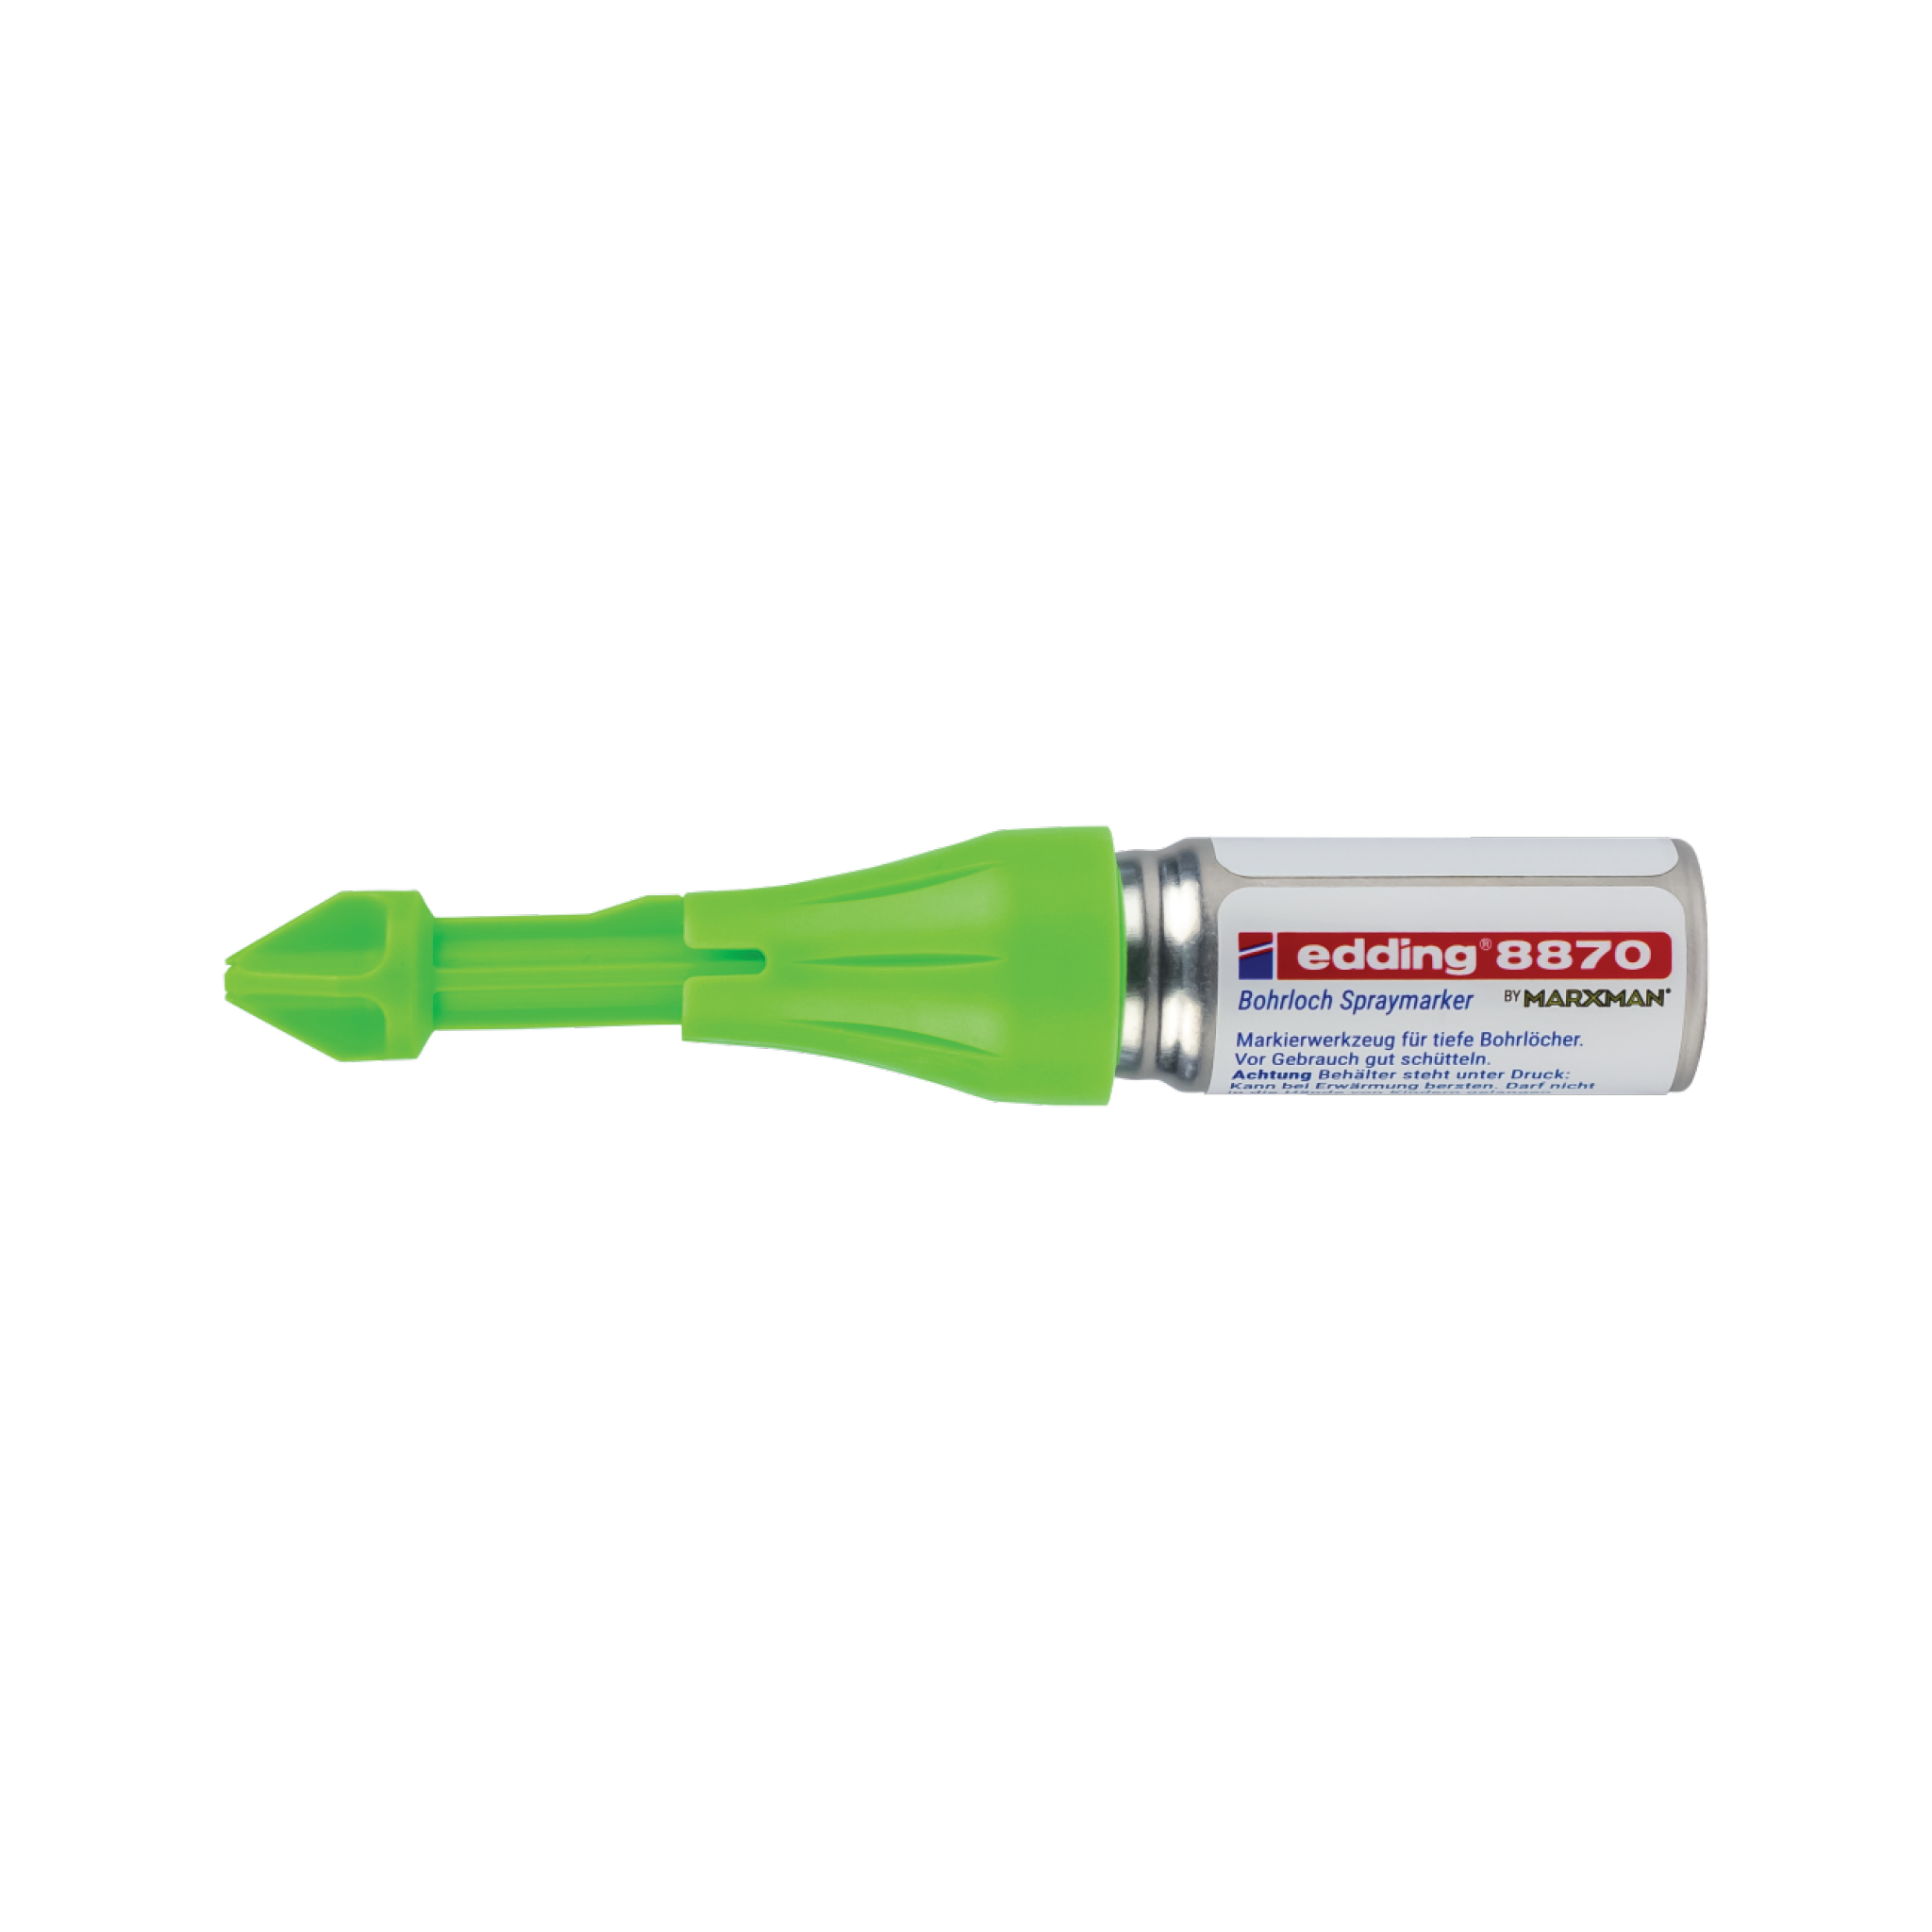 Ein grüner edding neongrün 8870 Bohrloch Spraymarker auf weißem Hintergrund.